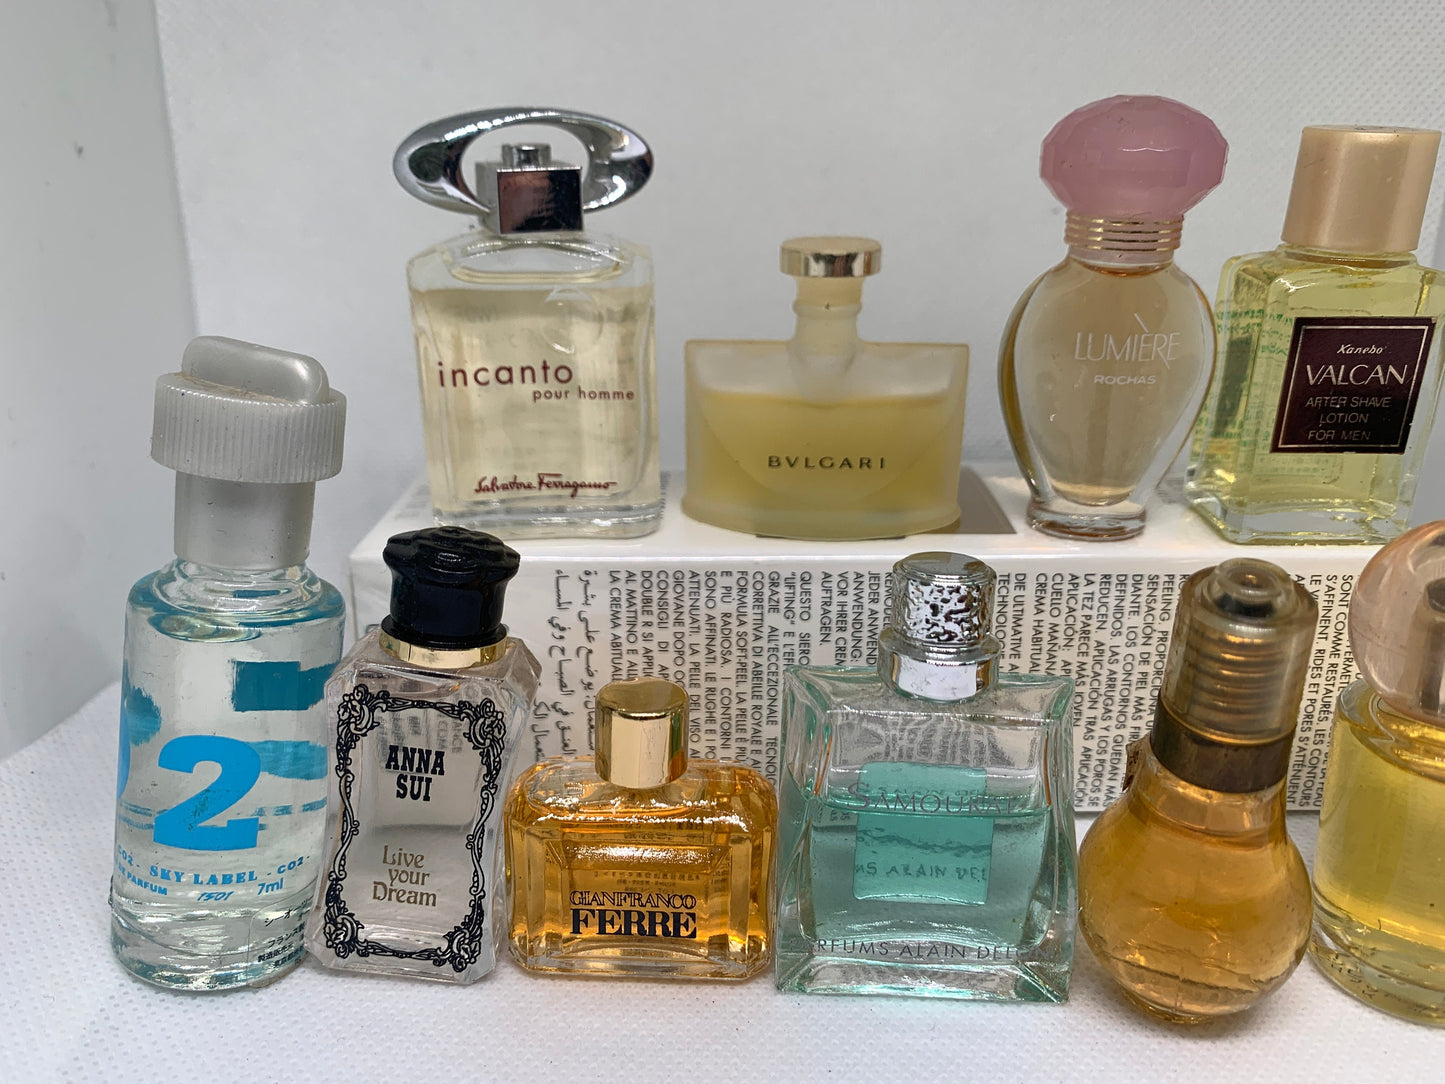 Mini Perfume EDT  11 bottles FERRE Anna sui Bvlgari set - 1503A